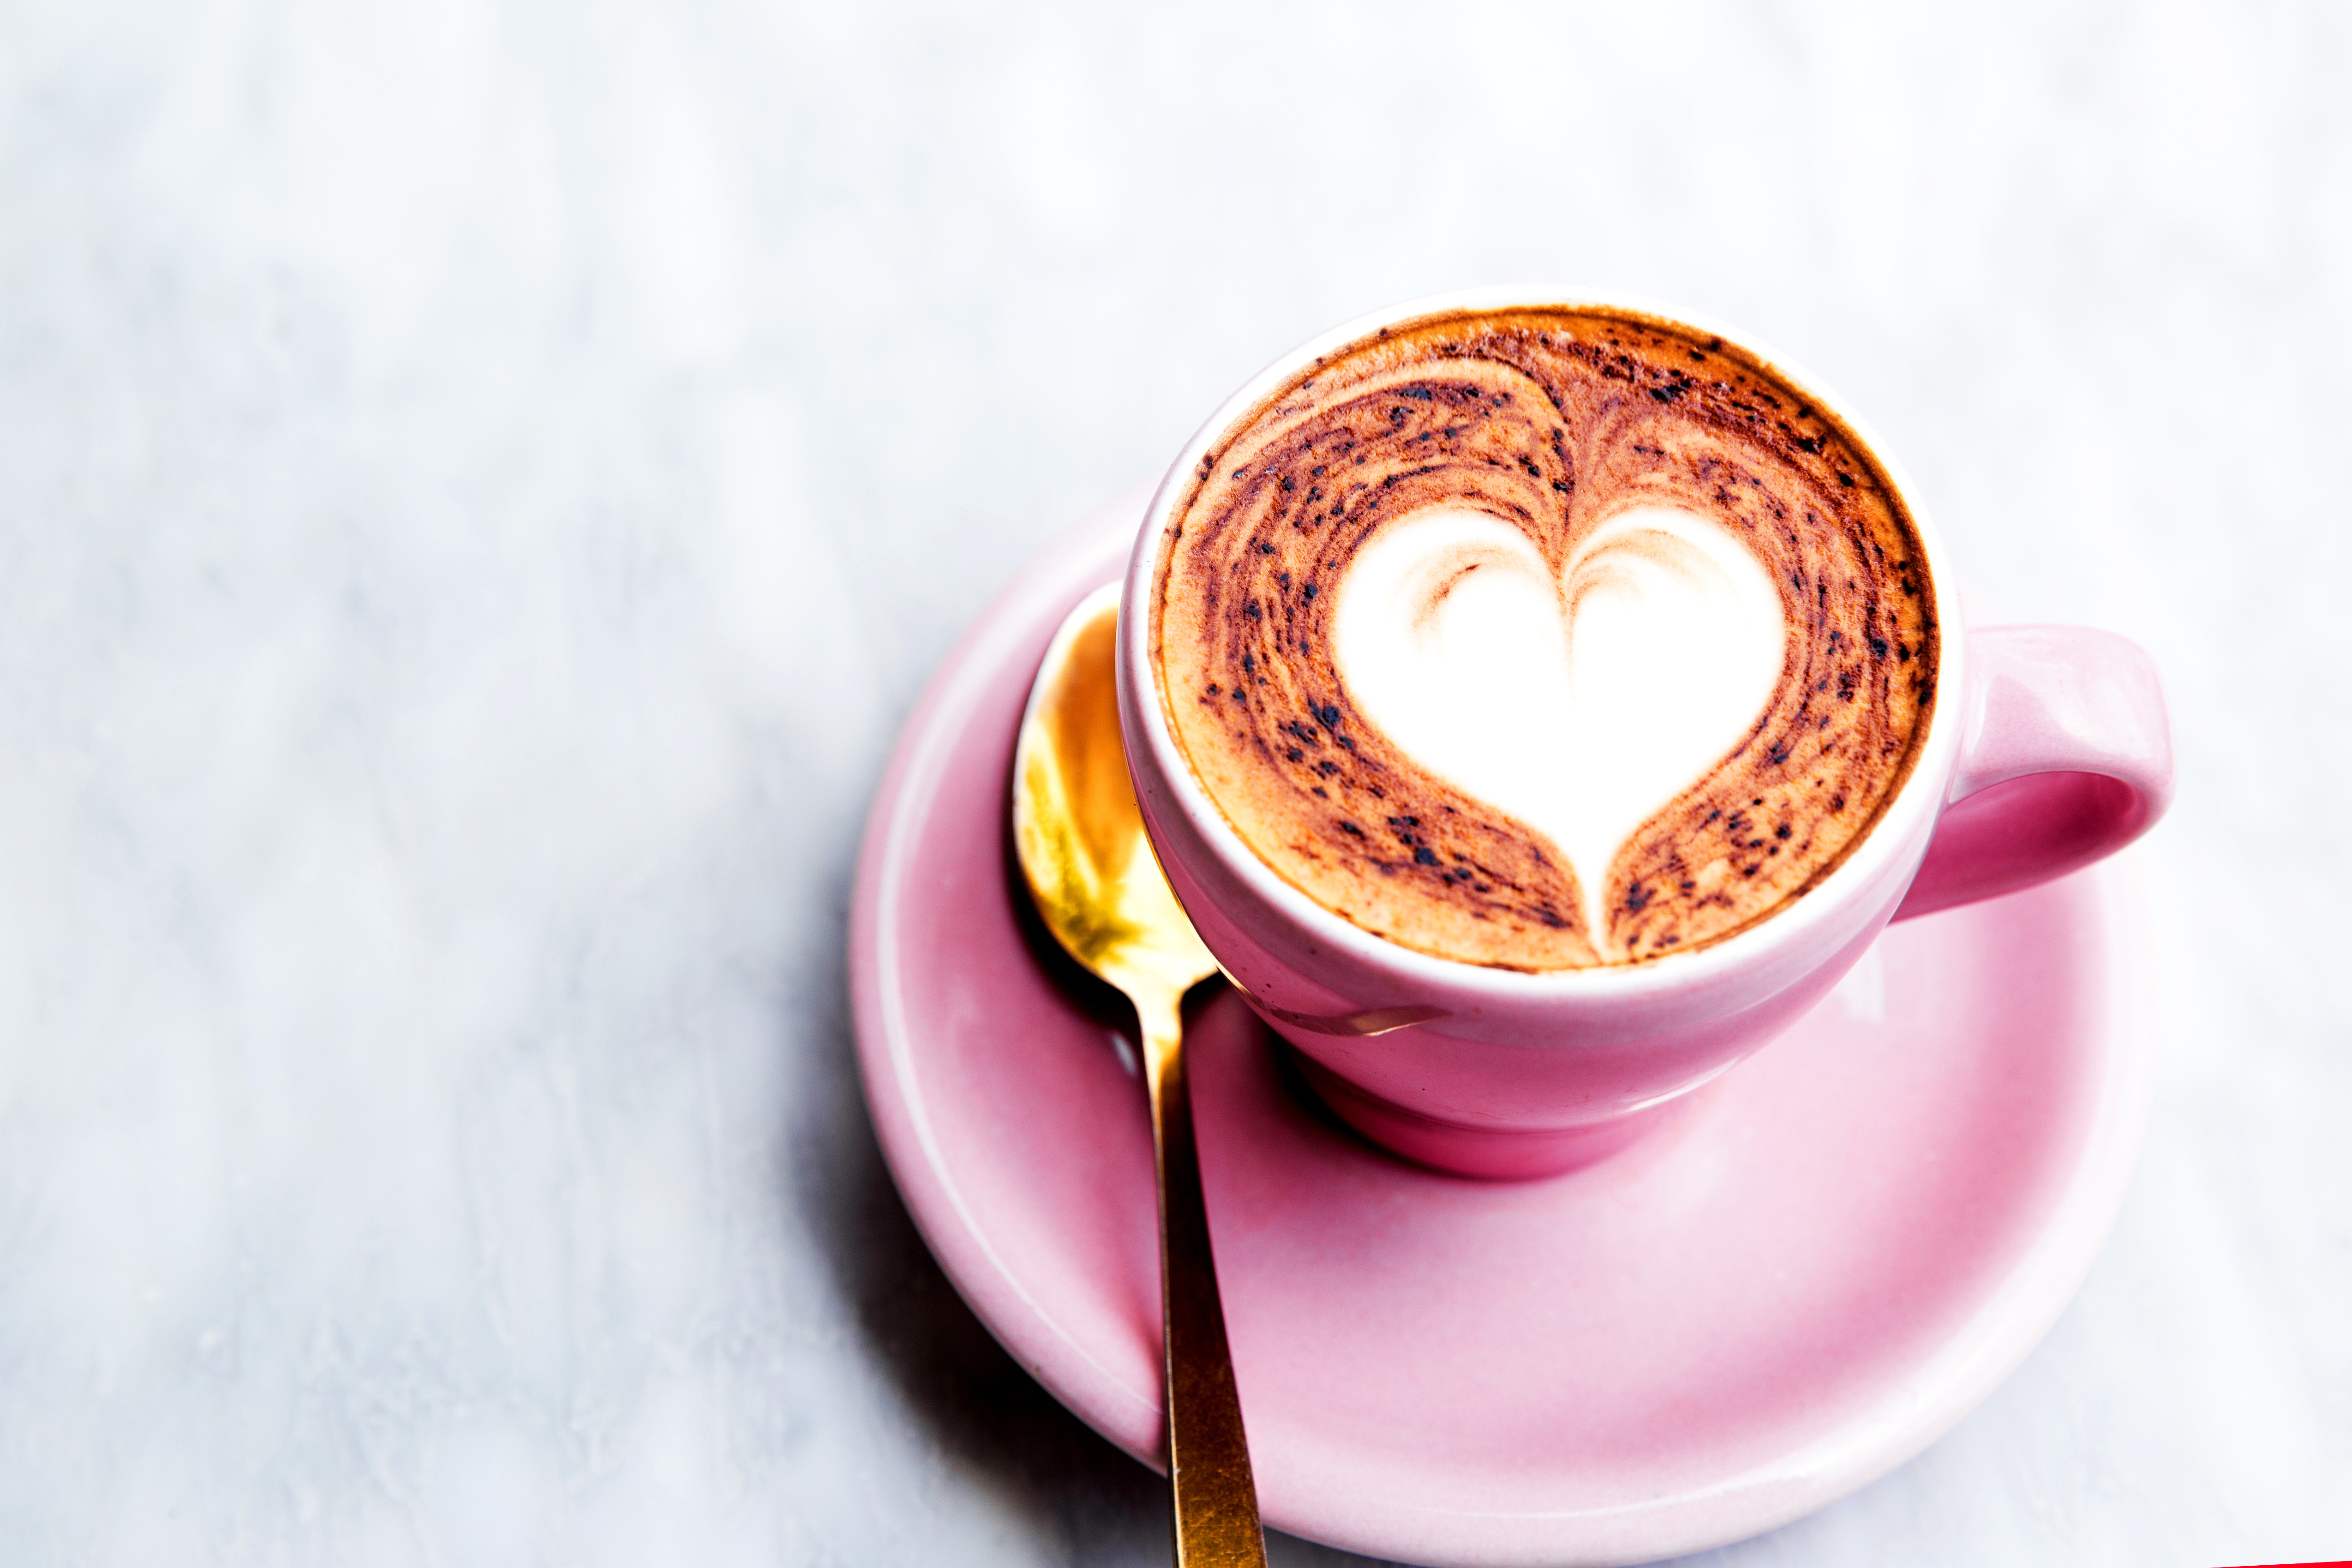 Non, le café n'augmente pas le risque de troubles du rythme cardiaque, confirme contre toute idée reçue, cette équipe de cardiologues de l’Université de Californie (Visuel Adobe Stock 229868783)